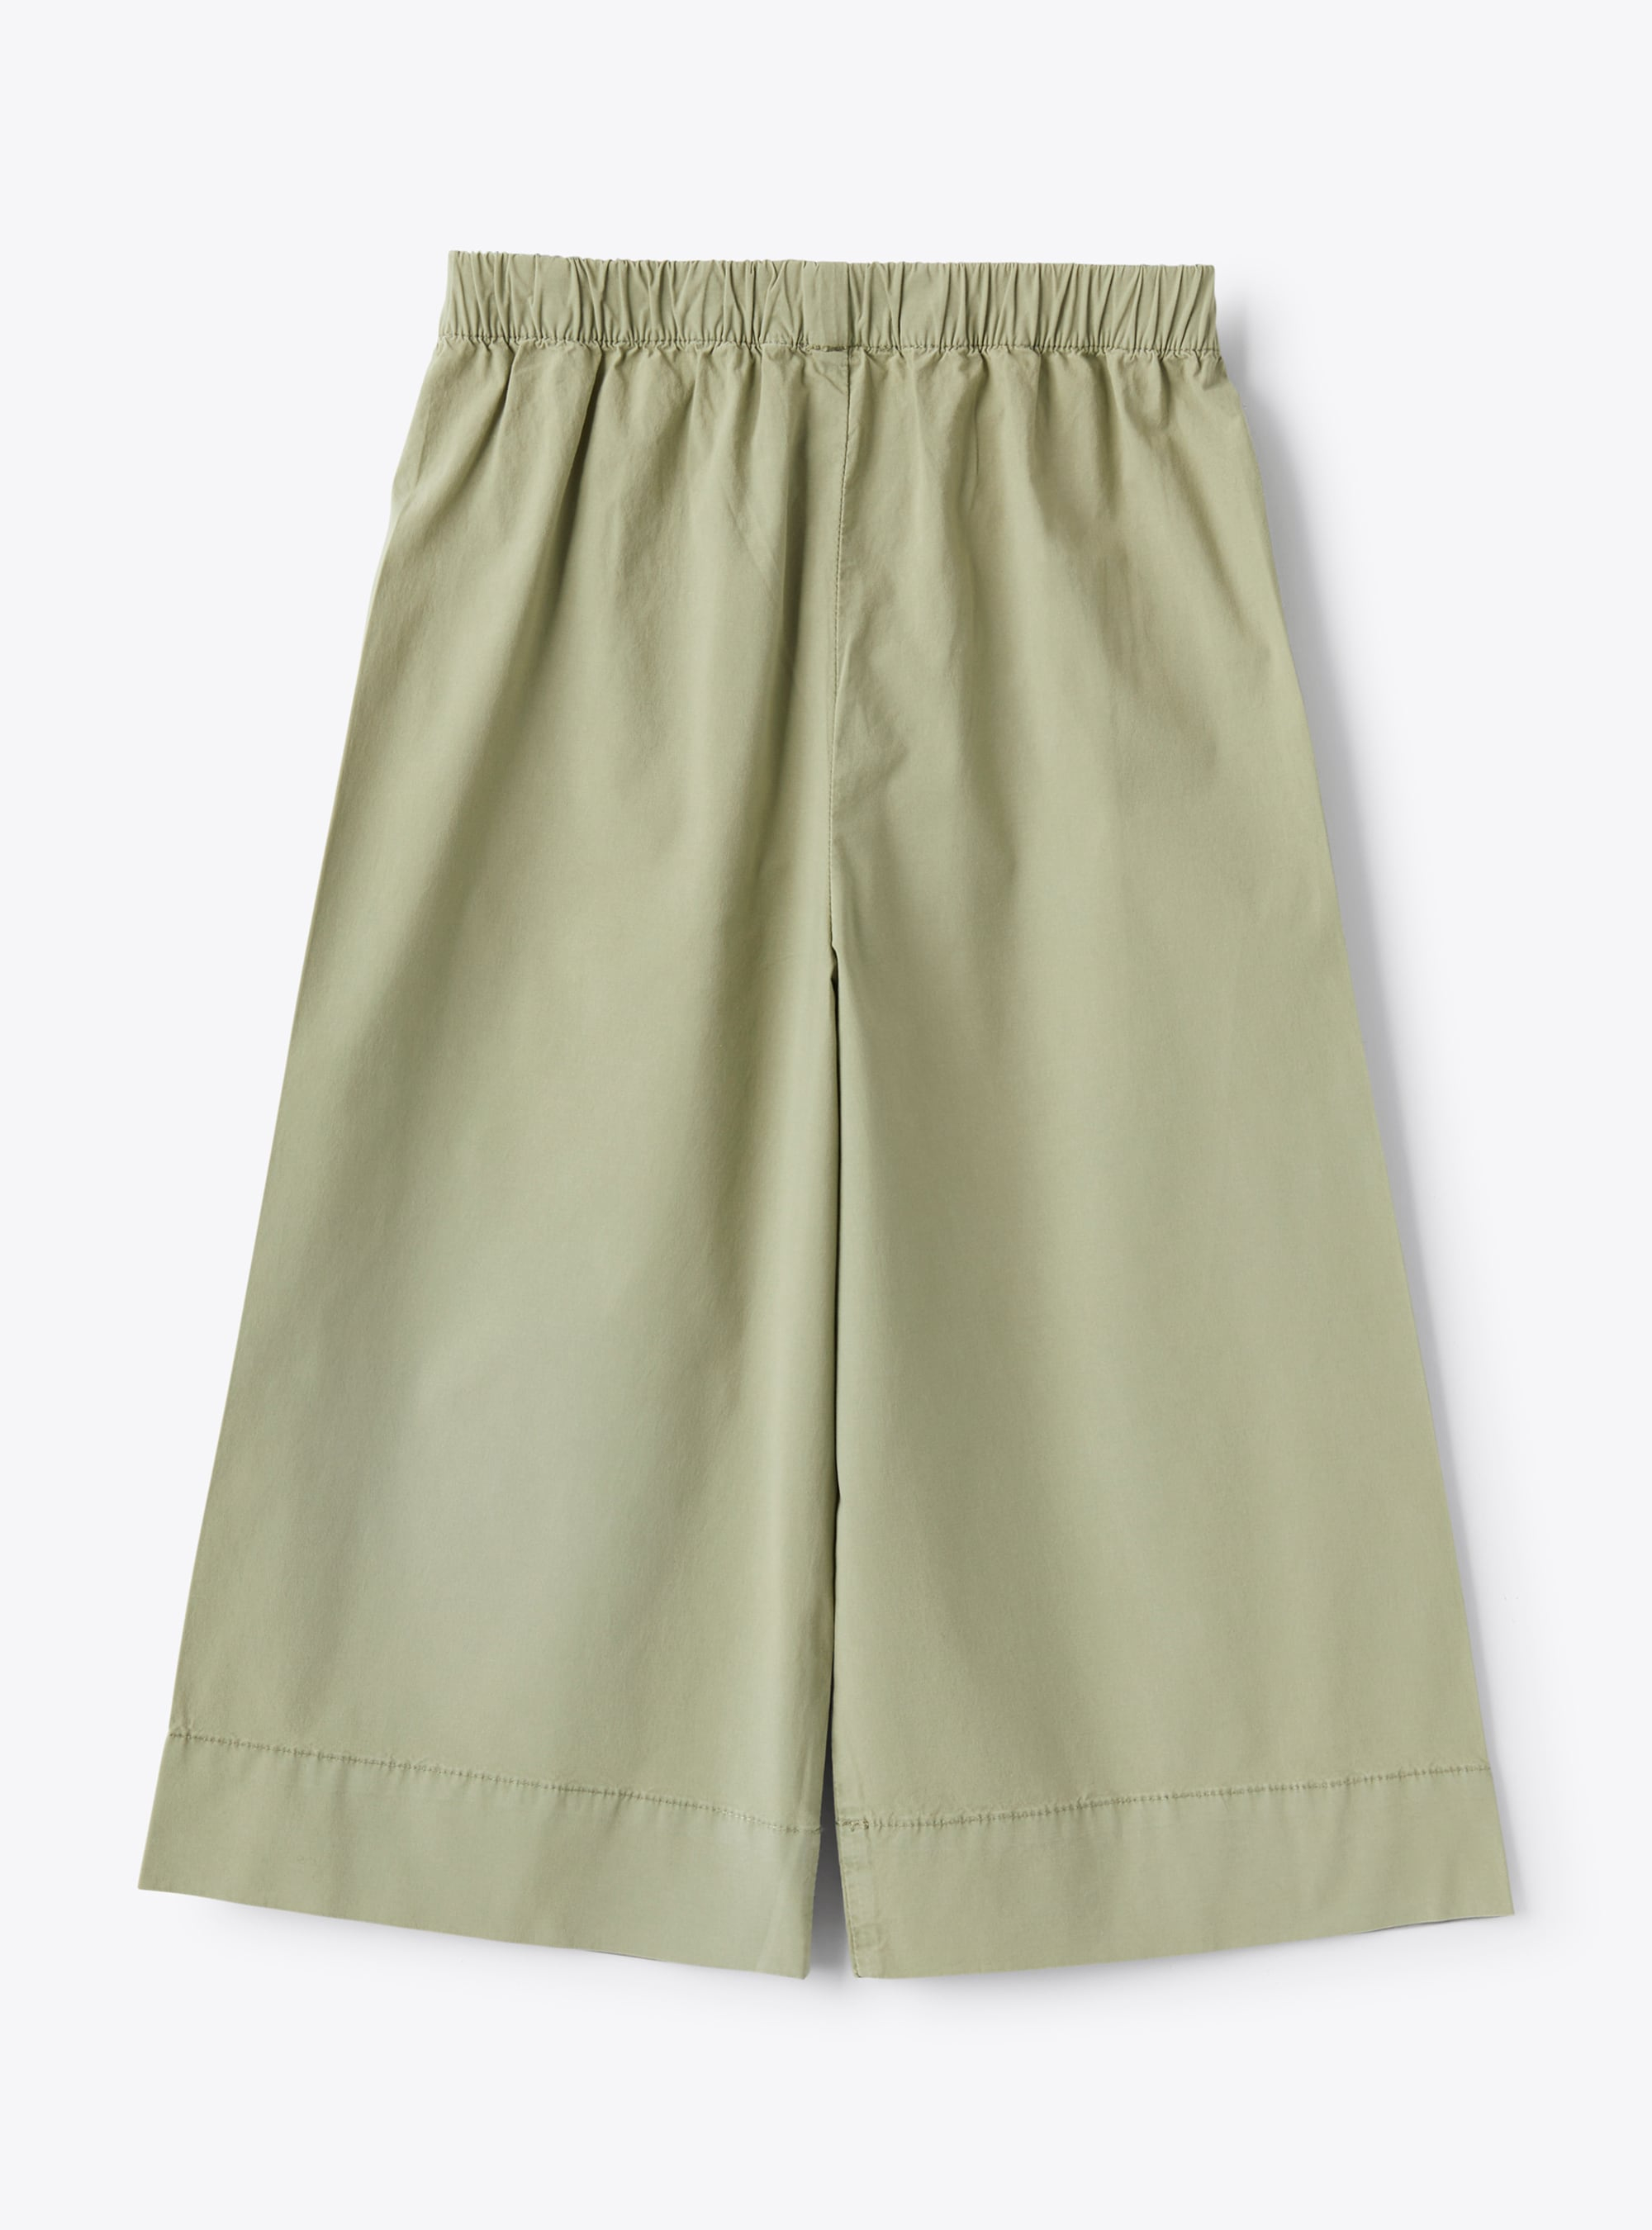 Capri pants in stretch sage-green poplin - Green | Il Gufo